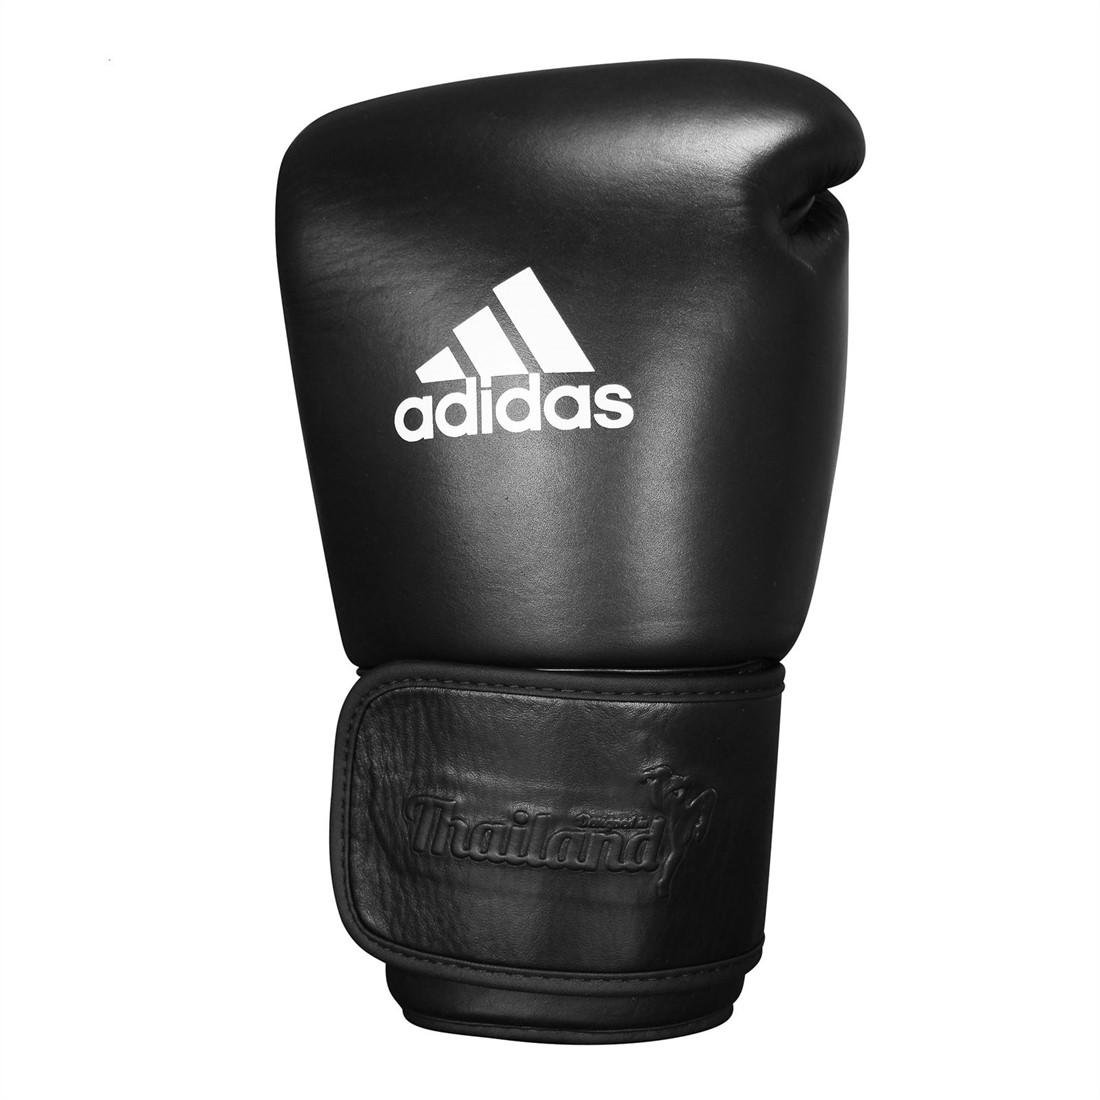 lus vervolgens Aanmoediging Adidas Muay Thai TP300 (Kick)Bokshandschoenen - Zwart - 16 oz |  Fitnessapparaat.nl